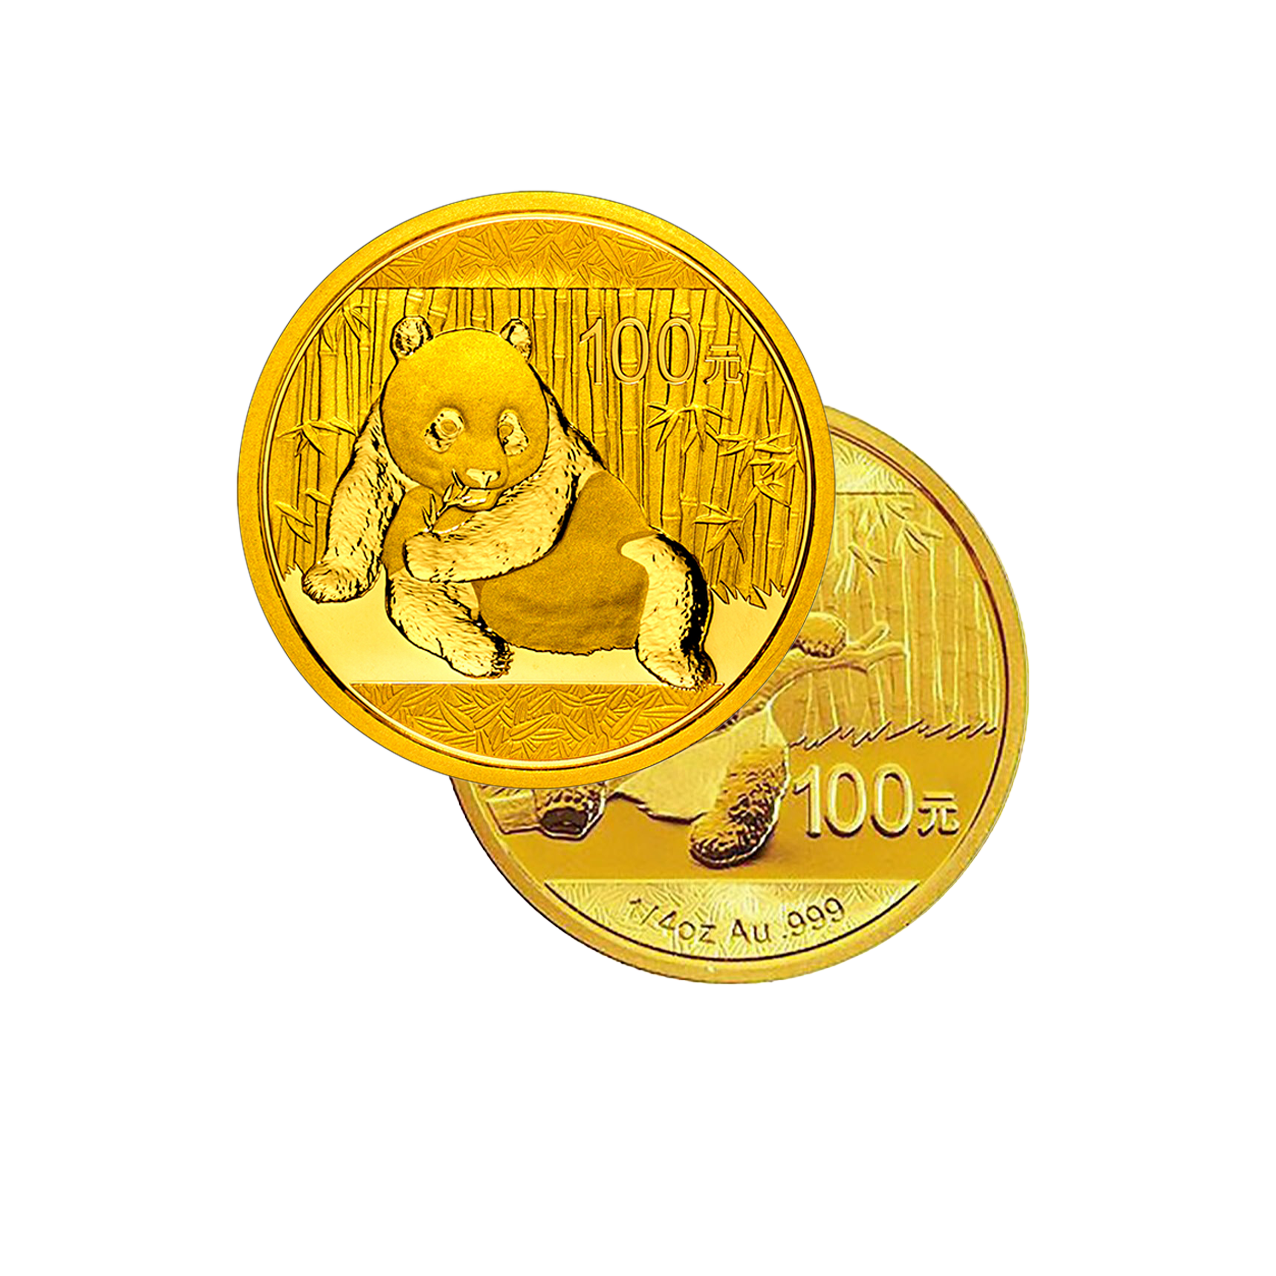 Panda (various Years) - China 1/4 oz gold coin